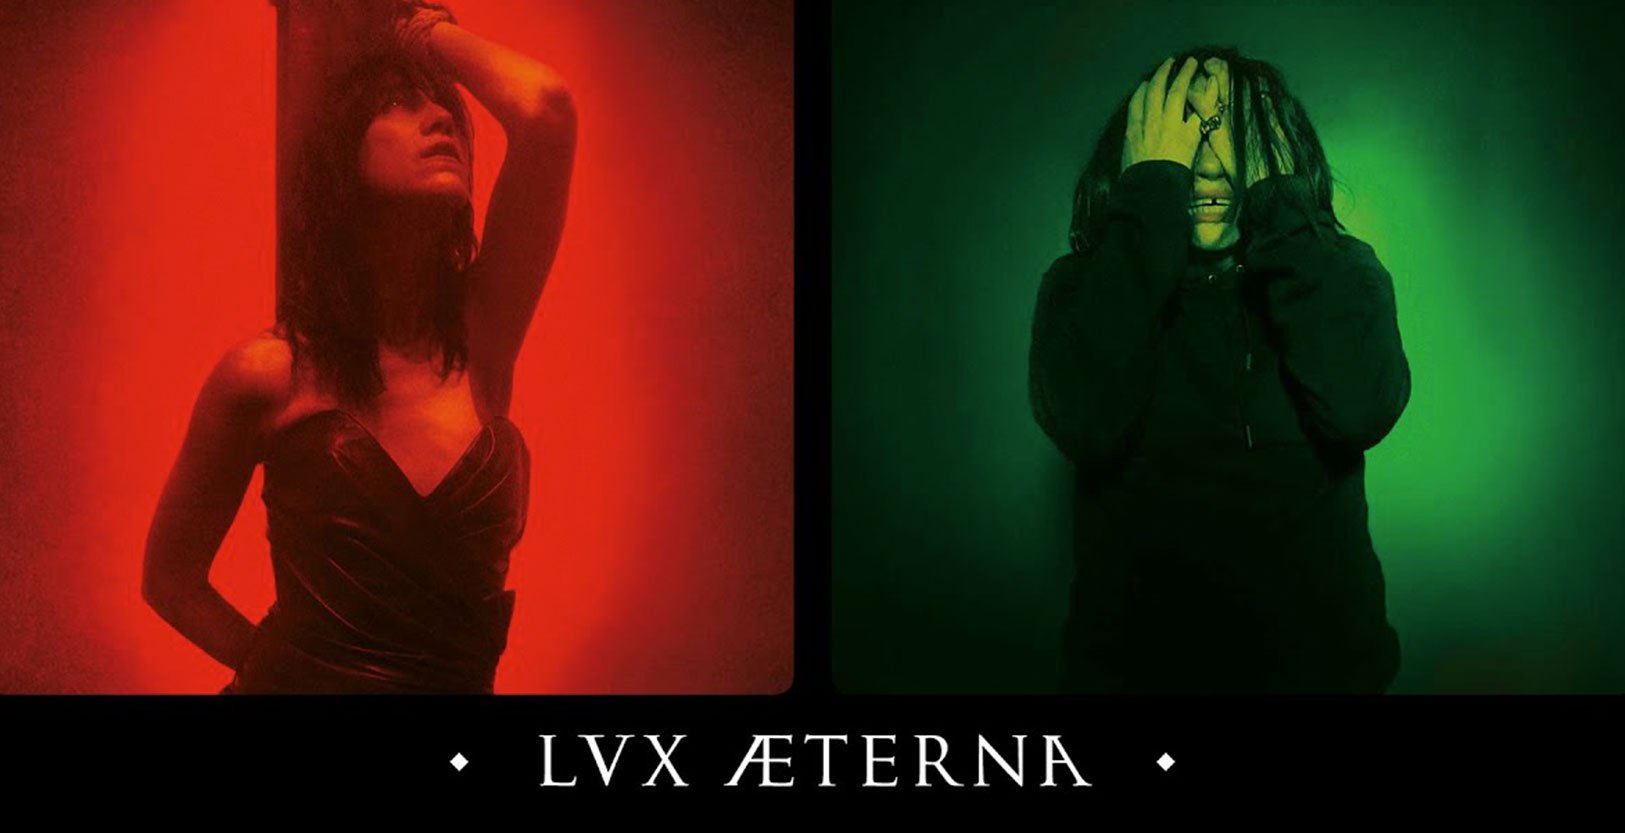 Poster film Lux Aeterna yang akan tayang pada 9 April 2020